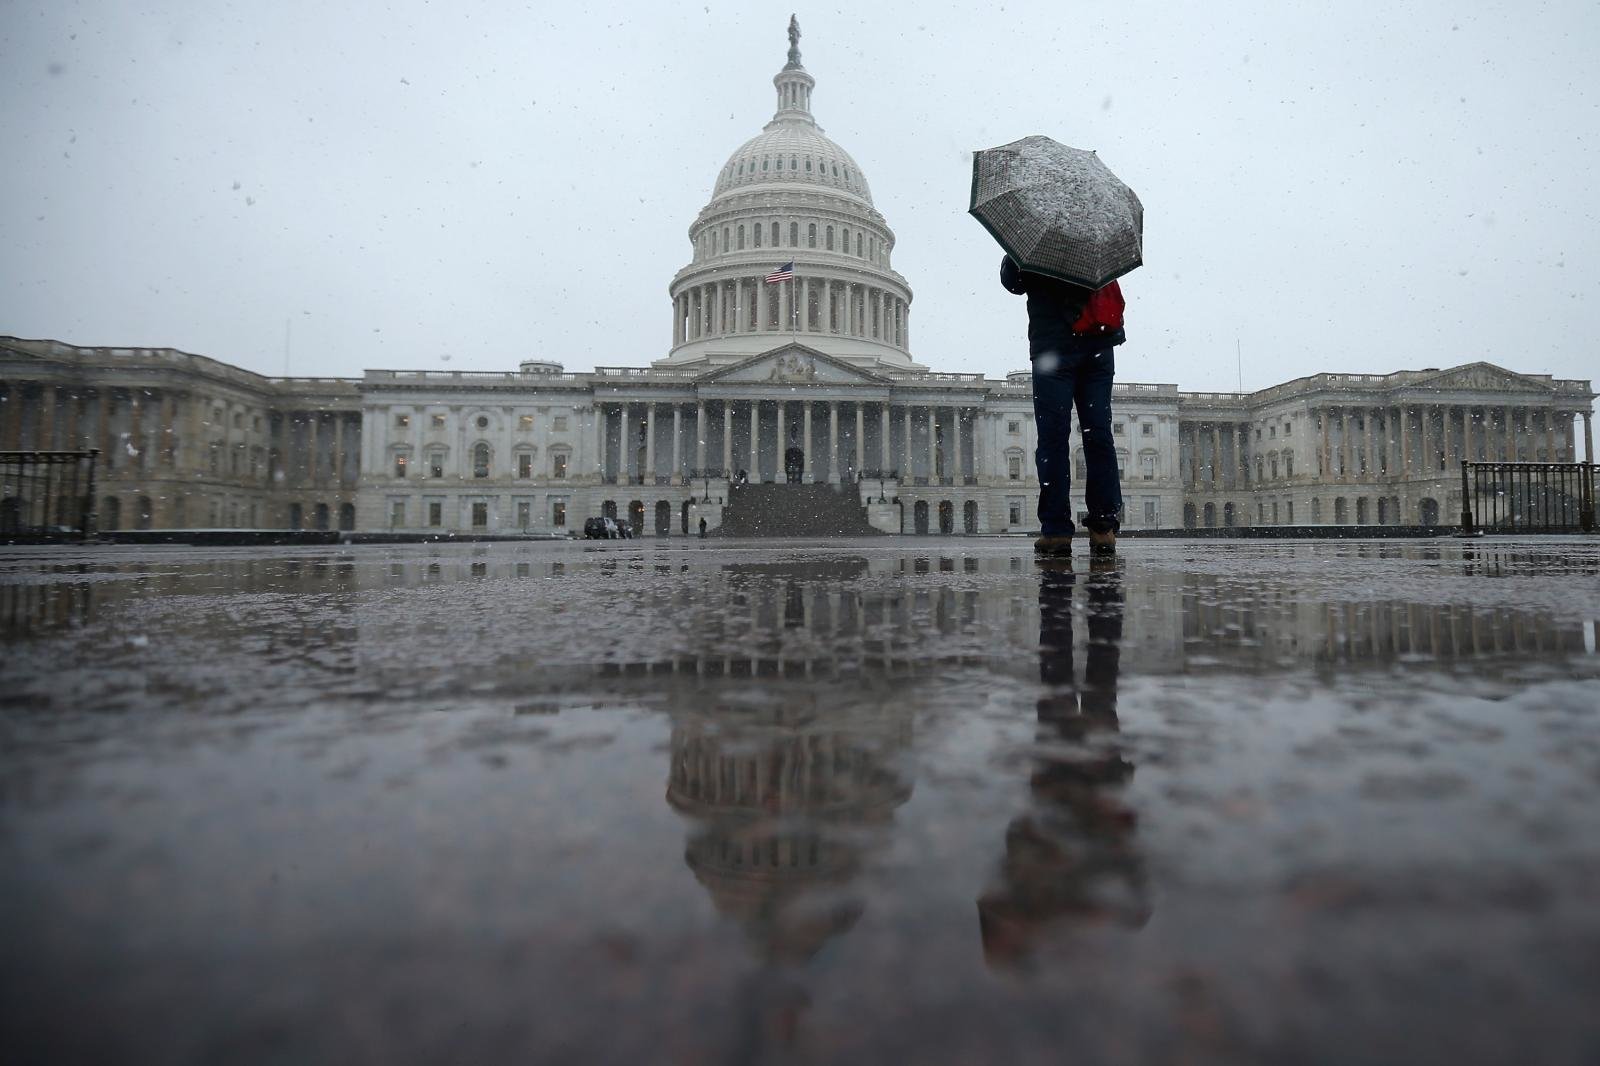 Rain in Washington DC